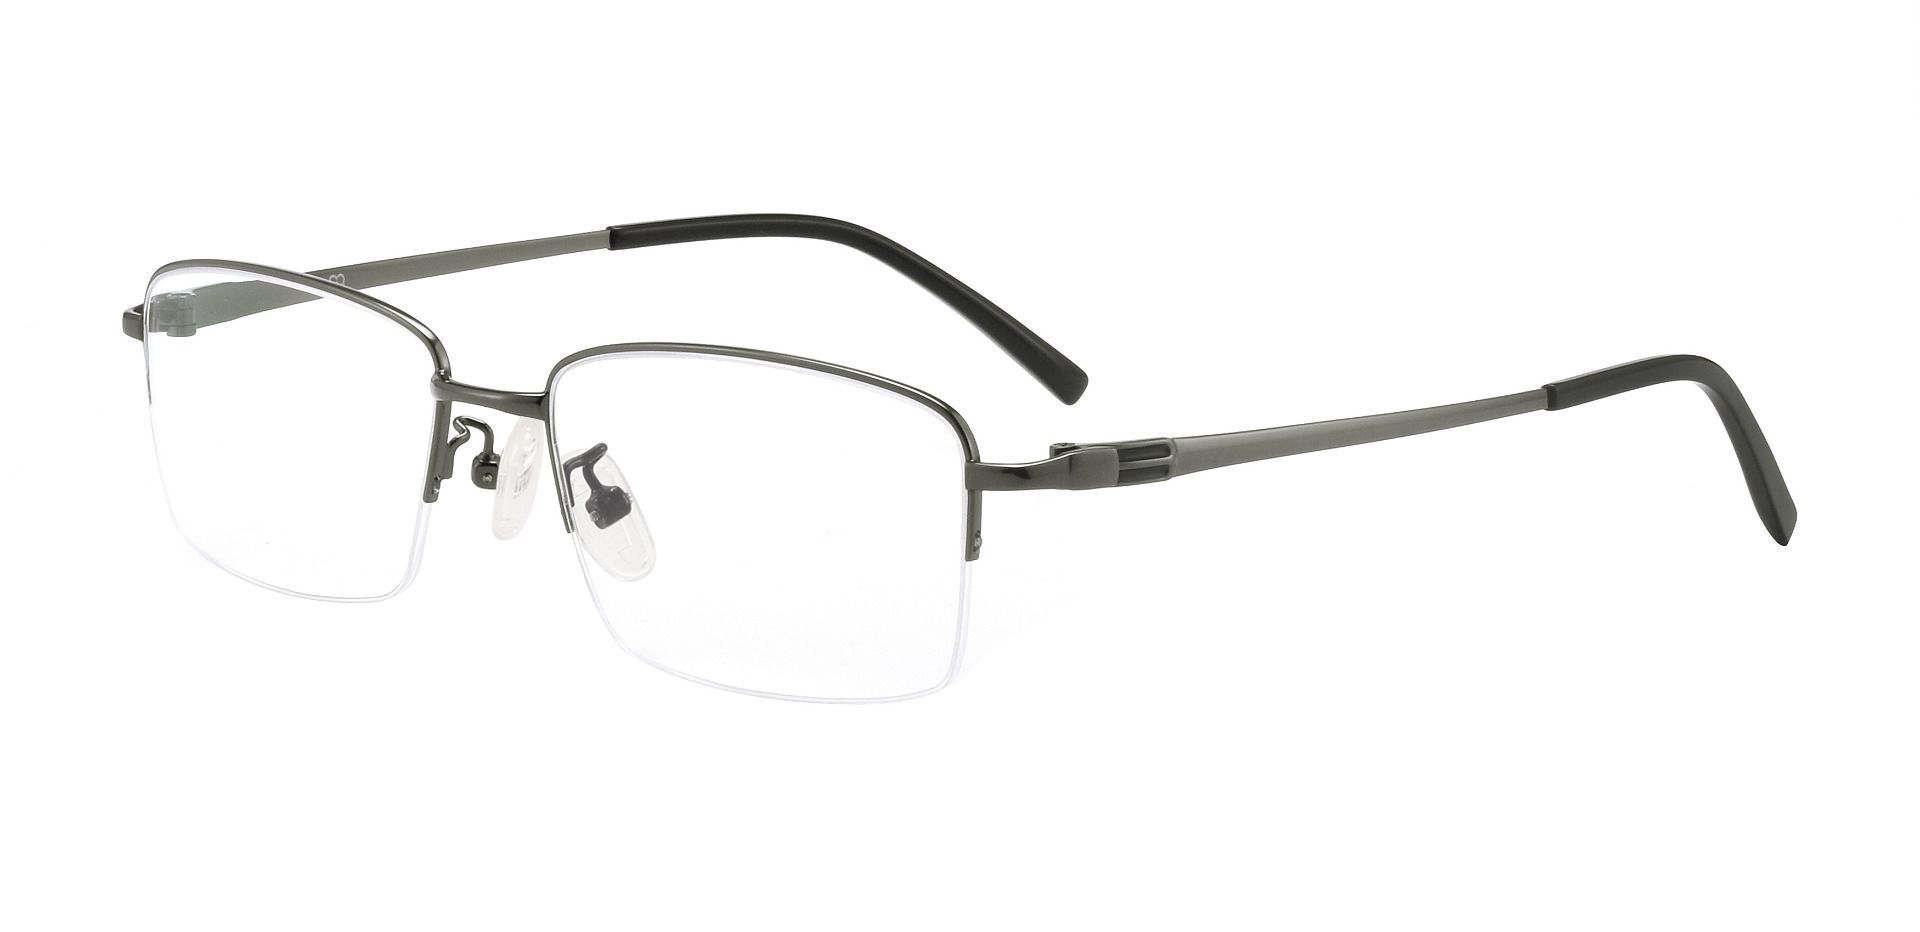 Friar Rectangle Eyeglasses Frame - Gray